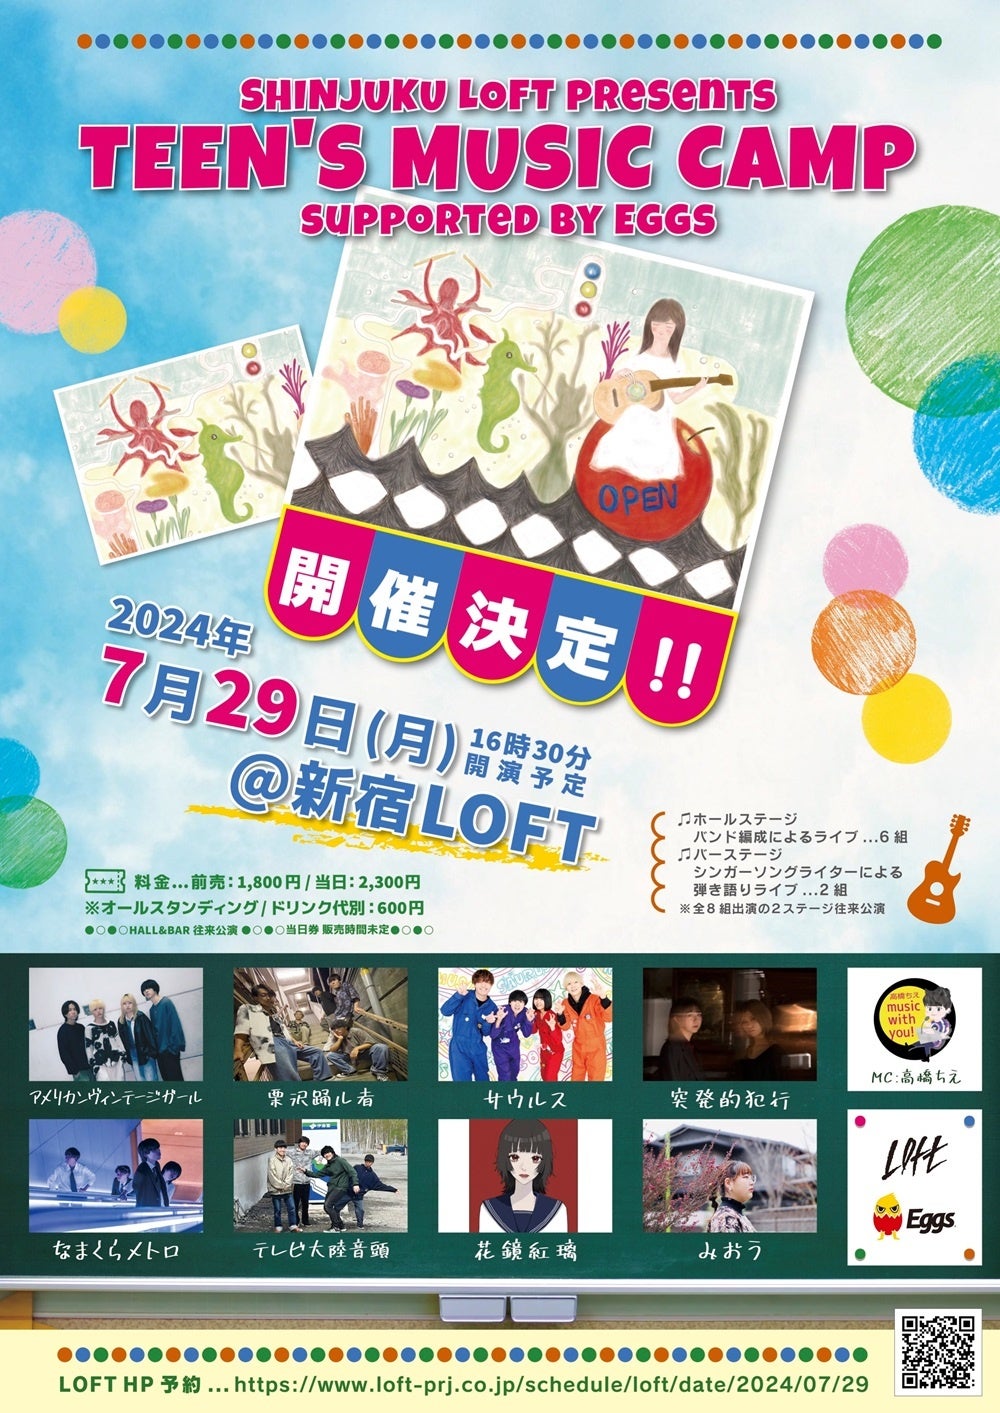 7/29開催、「TEEN'S MUSIC CAMP 2024～supported by Eggs～」名門ライブハウス新宿ロフトのステージに立つ8組...